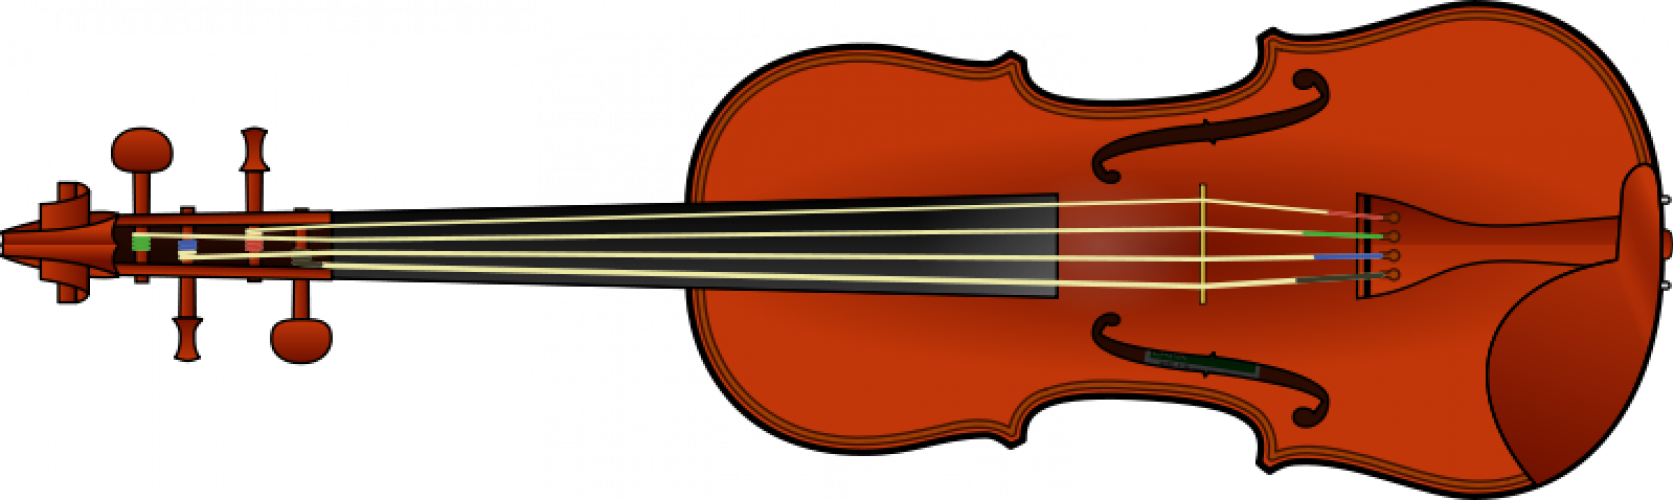 Fiddlers silhouette vector | Public domain vectors